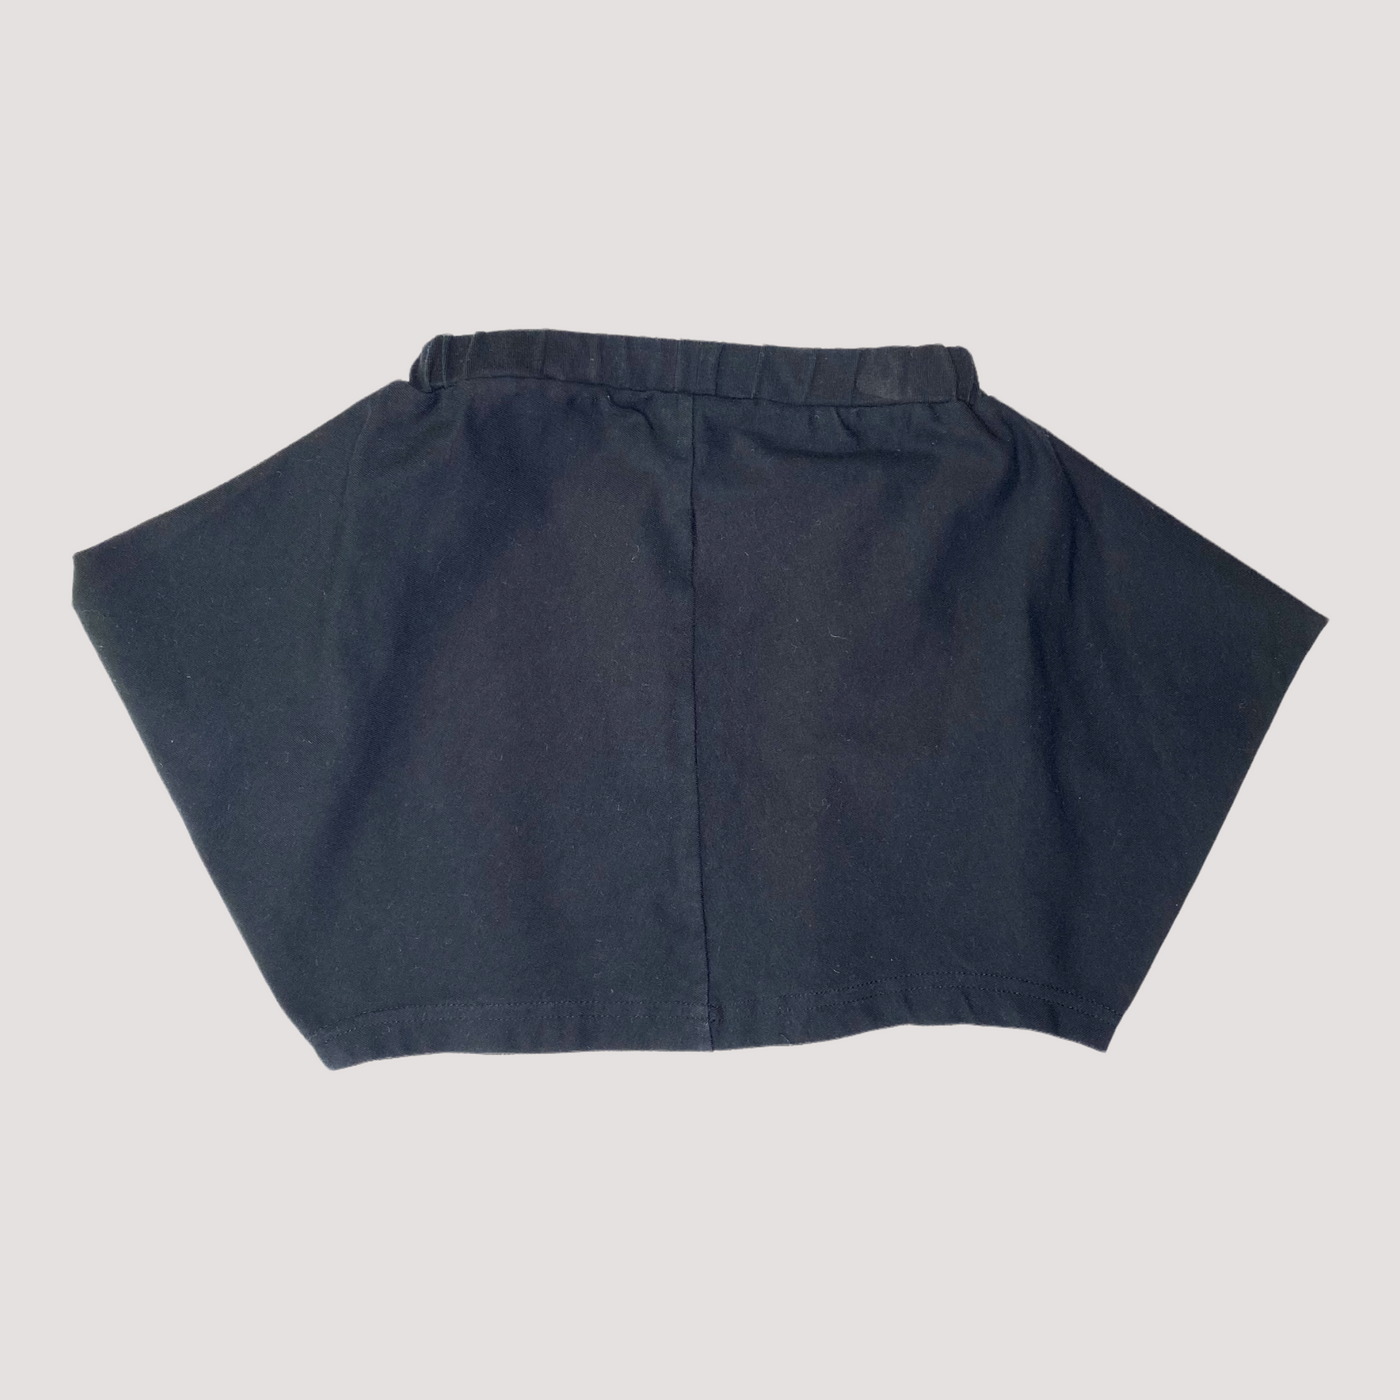 kenno skirt, black | 98/104cm